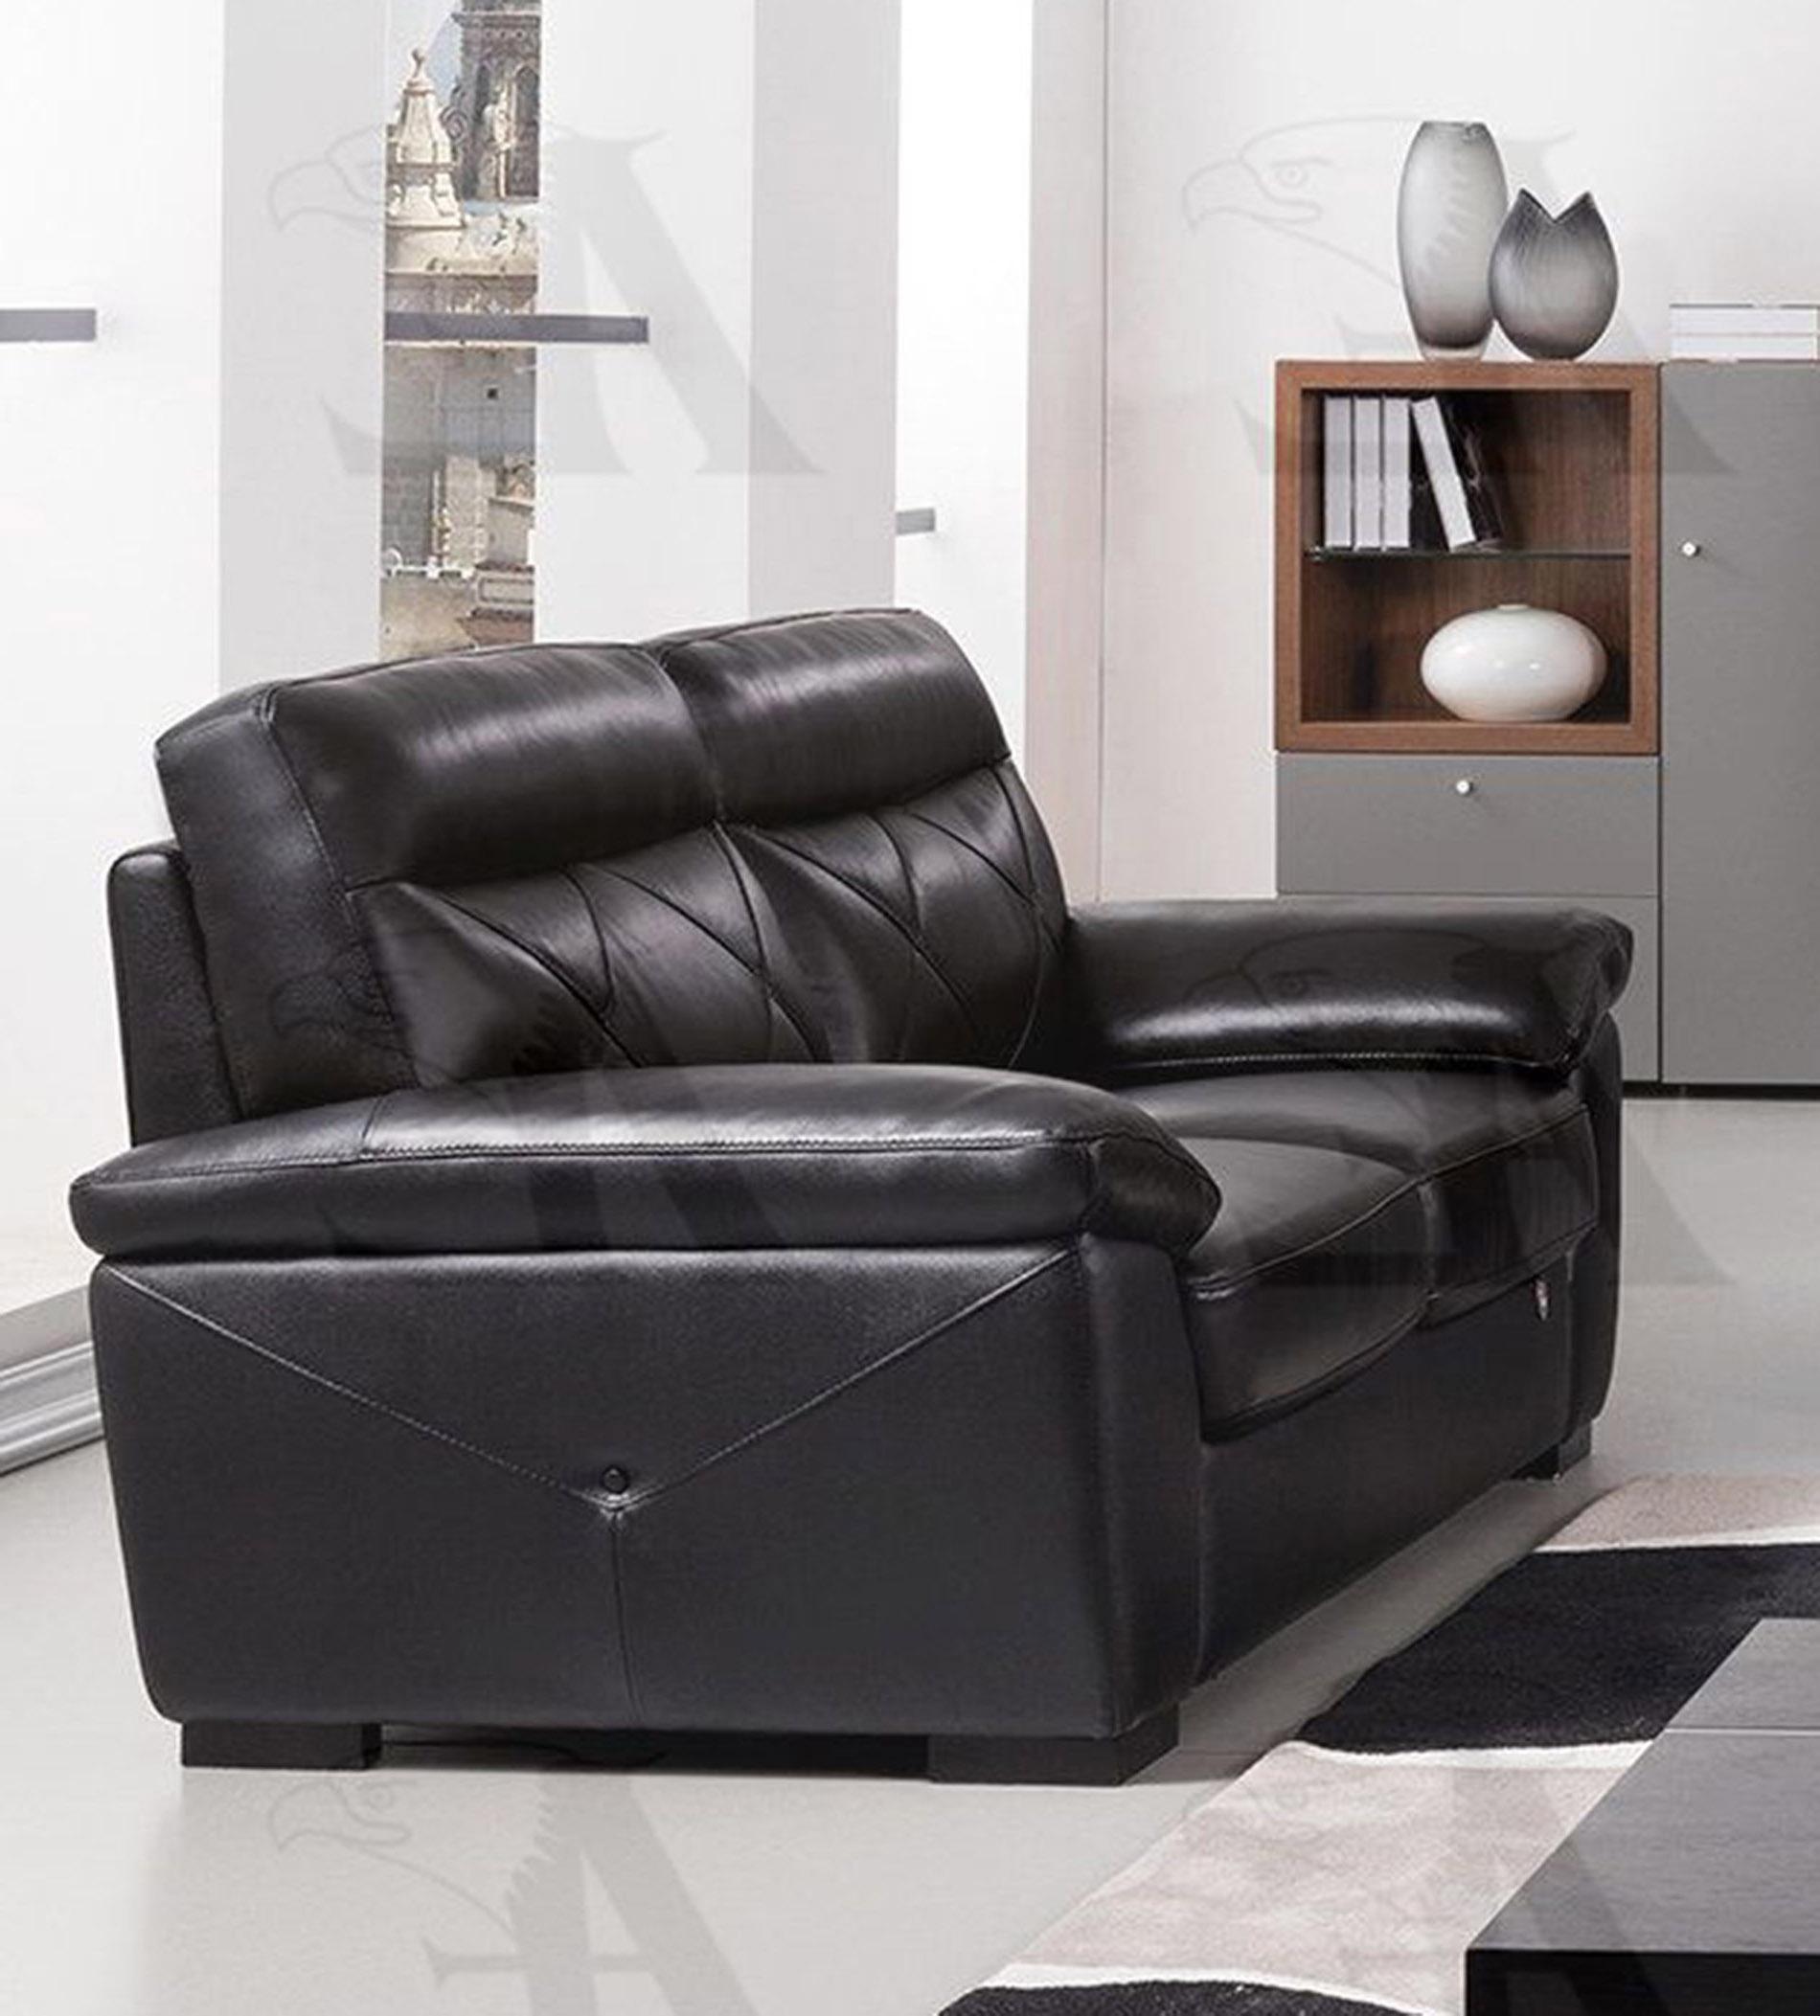 

    
American Eagle Furniture EK081-BK-SF Sofa Black EK081-BK-SF
